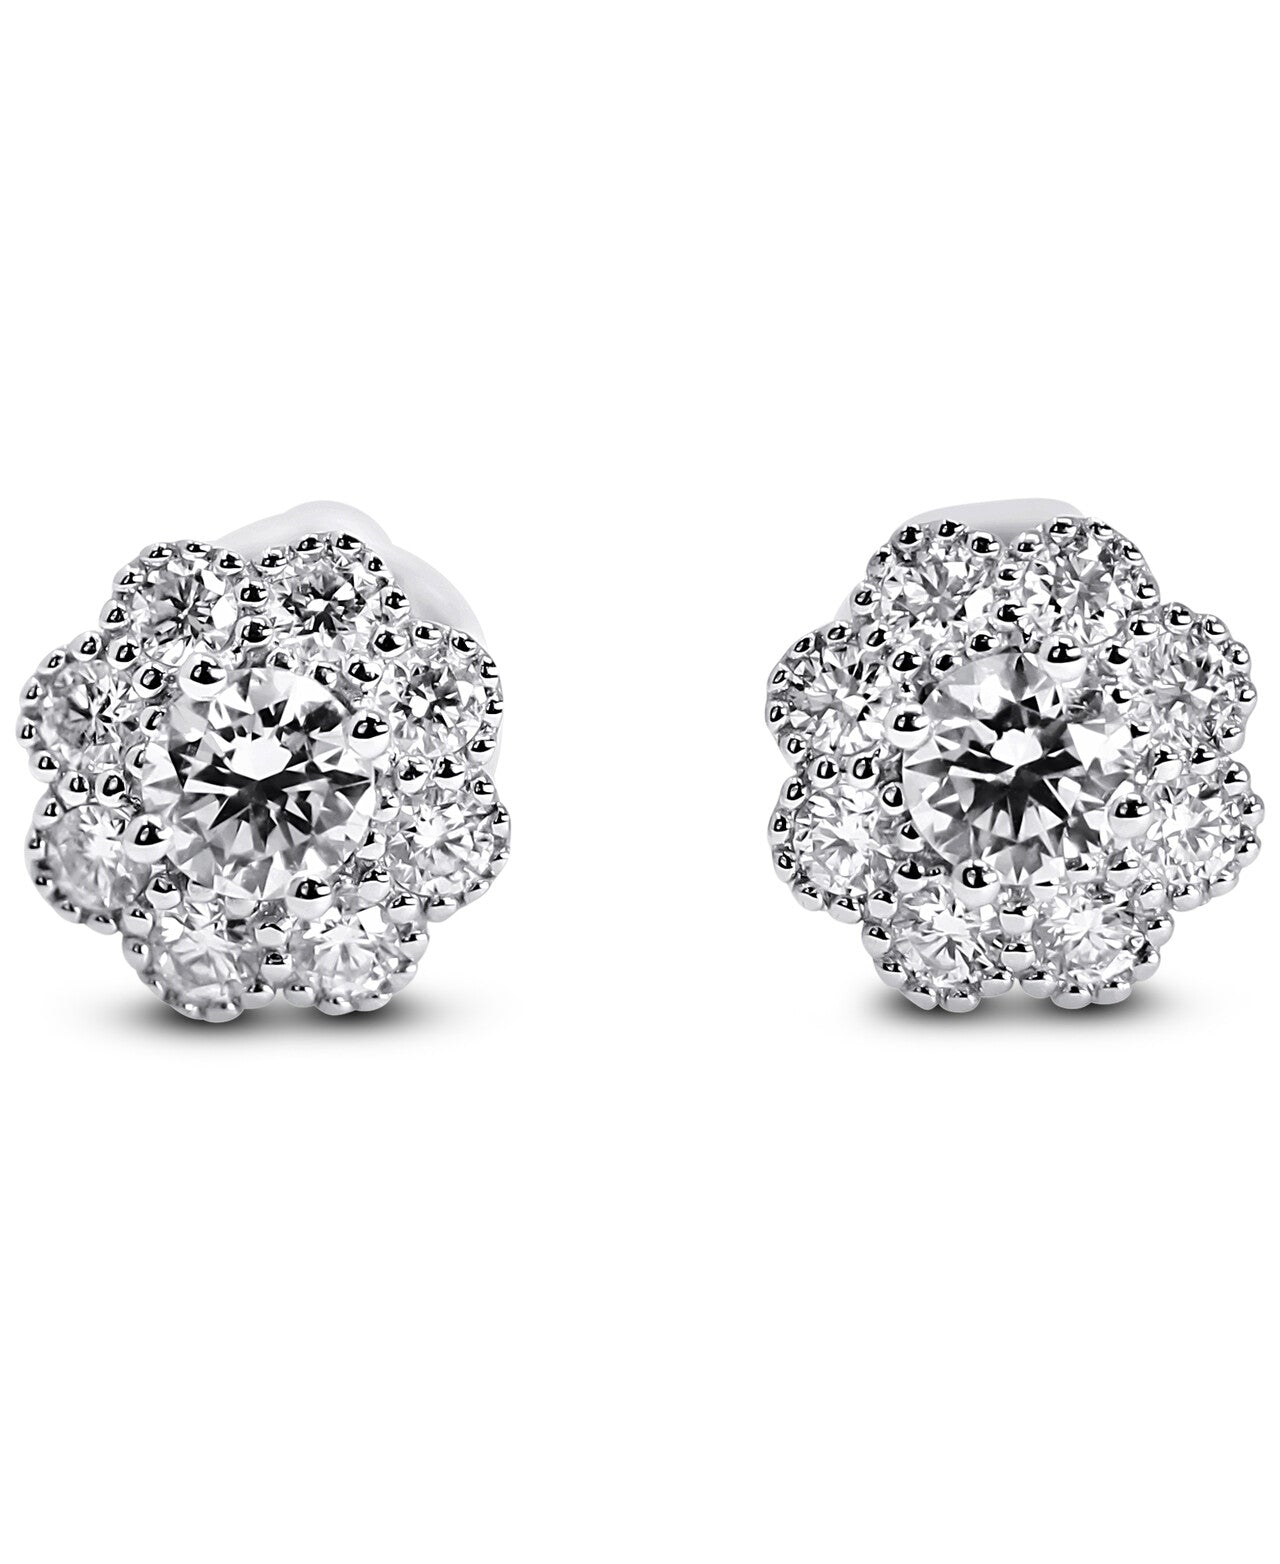 Diamond Flower Stud Earrings by Yael - White Gold